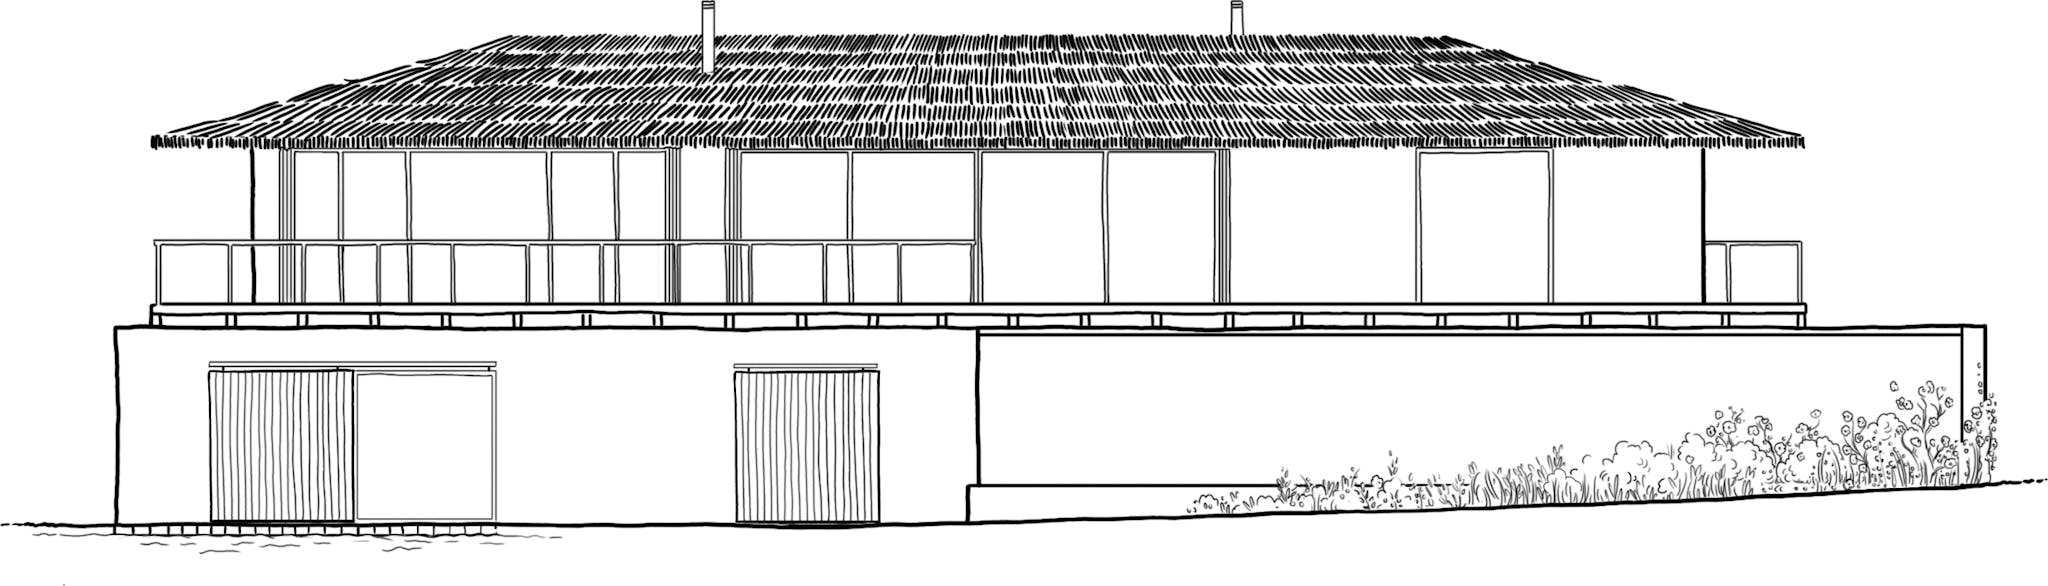 plans illustrés de la maison casa.